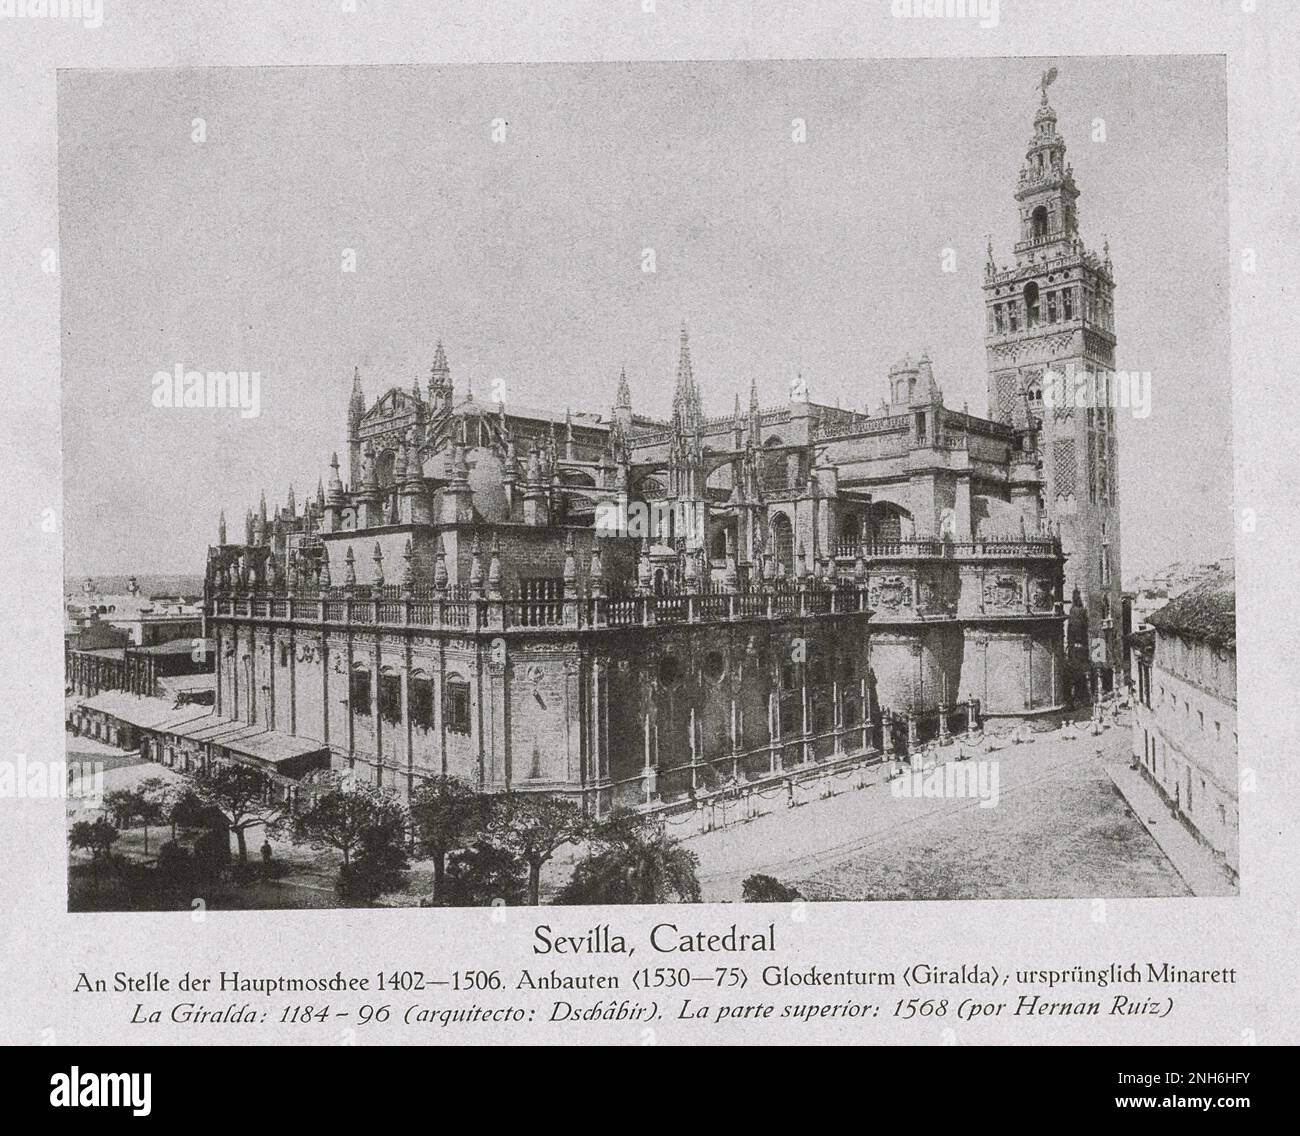 Architektur des alten Spaniens. Vintage-Foto der Kathedrale von Sevilla (Kathedrale der Heiligen Maria des Meeres). Anstelle der Hauptmoschee 1402-1506. Eine römisch-katholische Kathedrale in Sevilla, Andalusien, Spanien. Es ist die viertgrößte Kirche der Welt sowie die größte gotische Kirche. Stockfoto